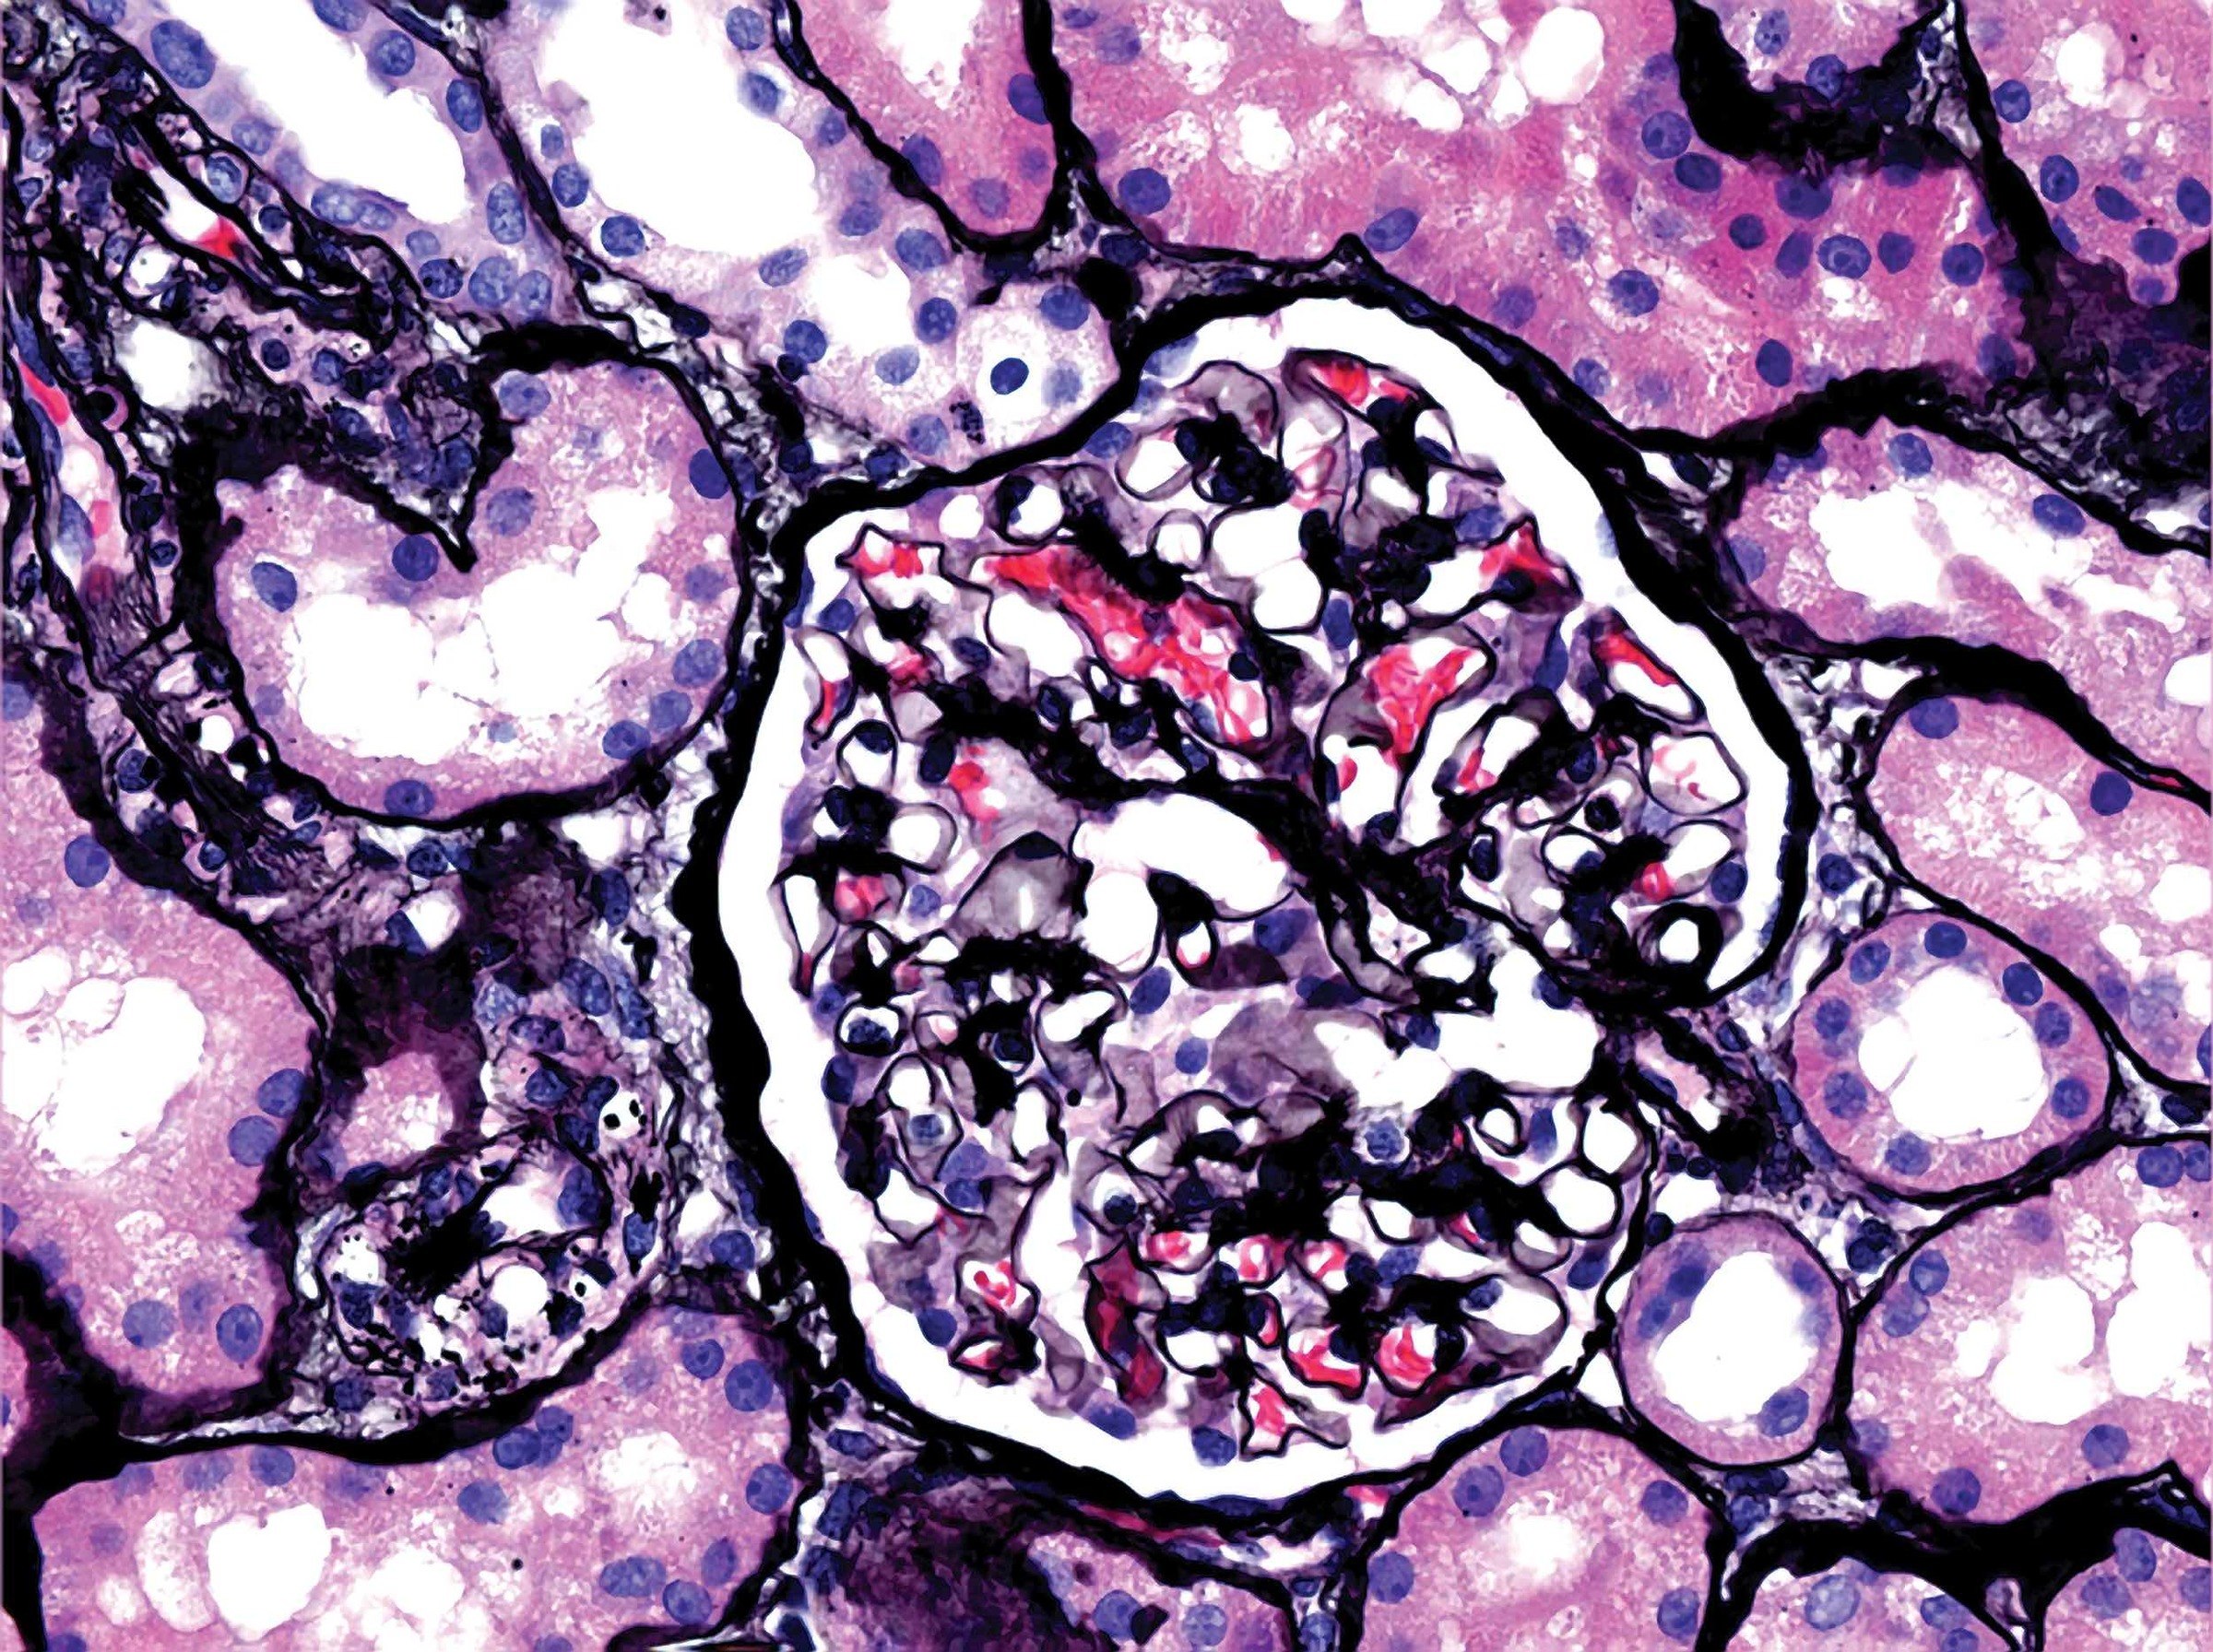 Renal pathology- image of glomerulus from renal biopsy